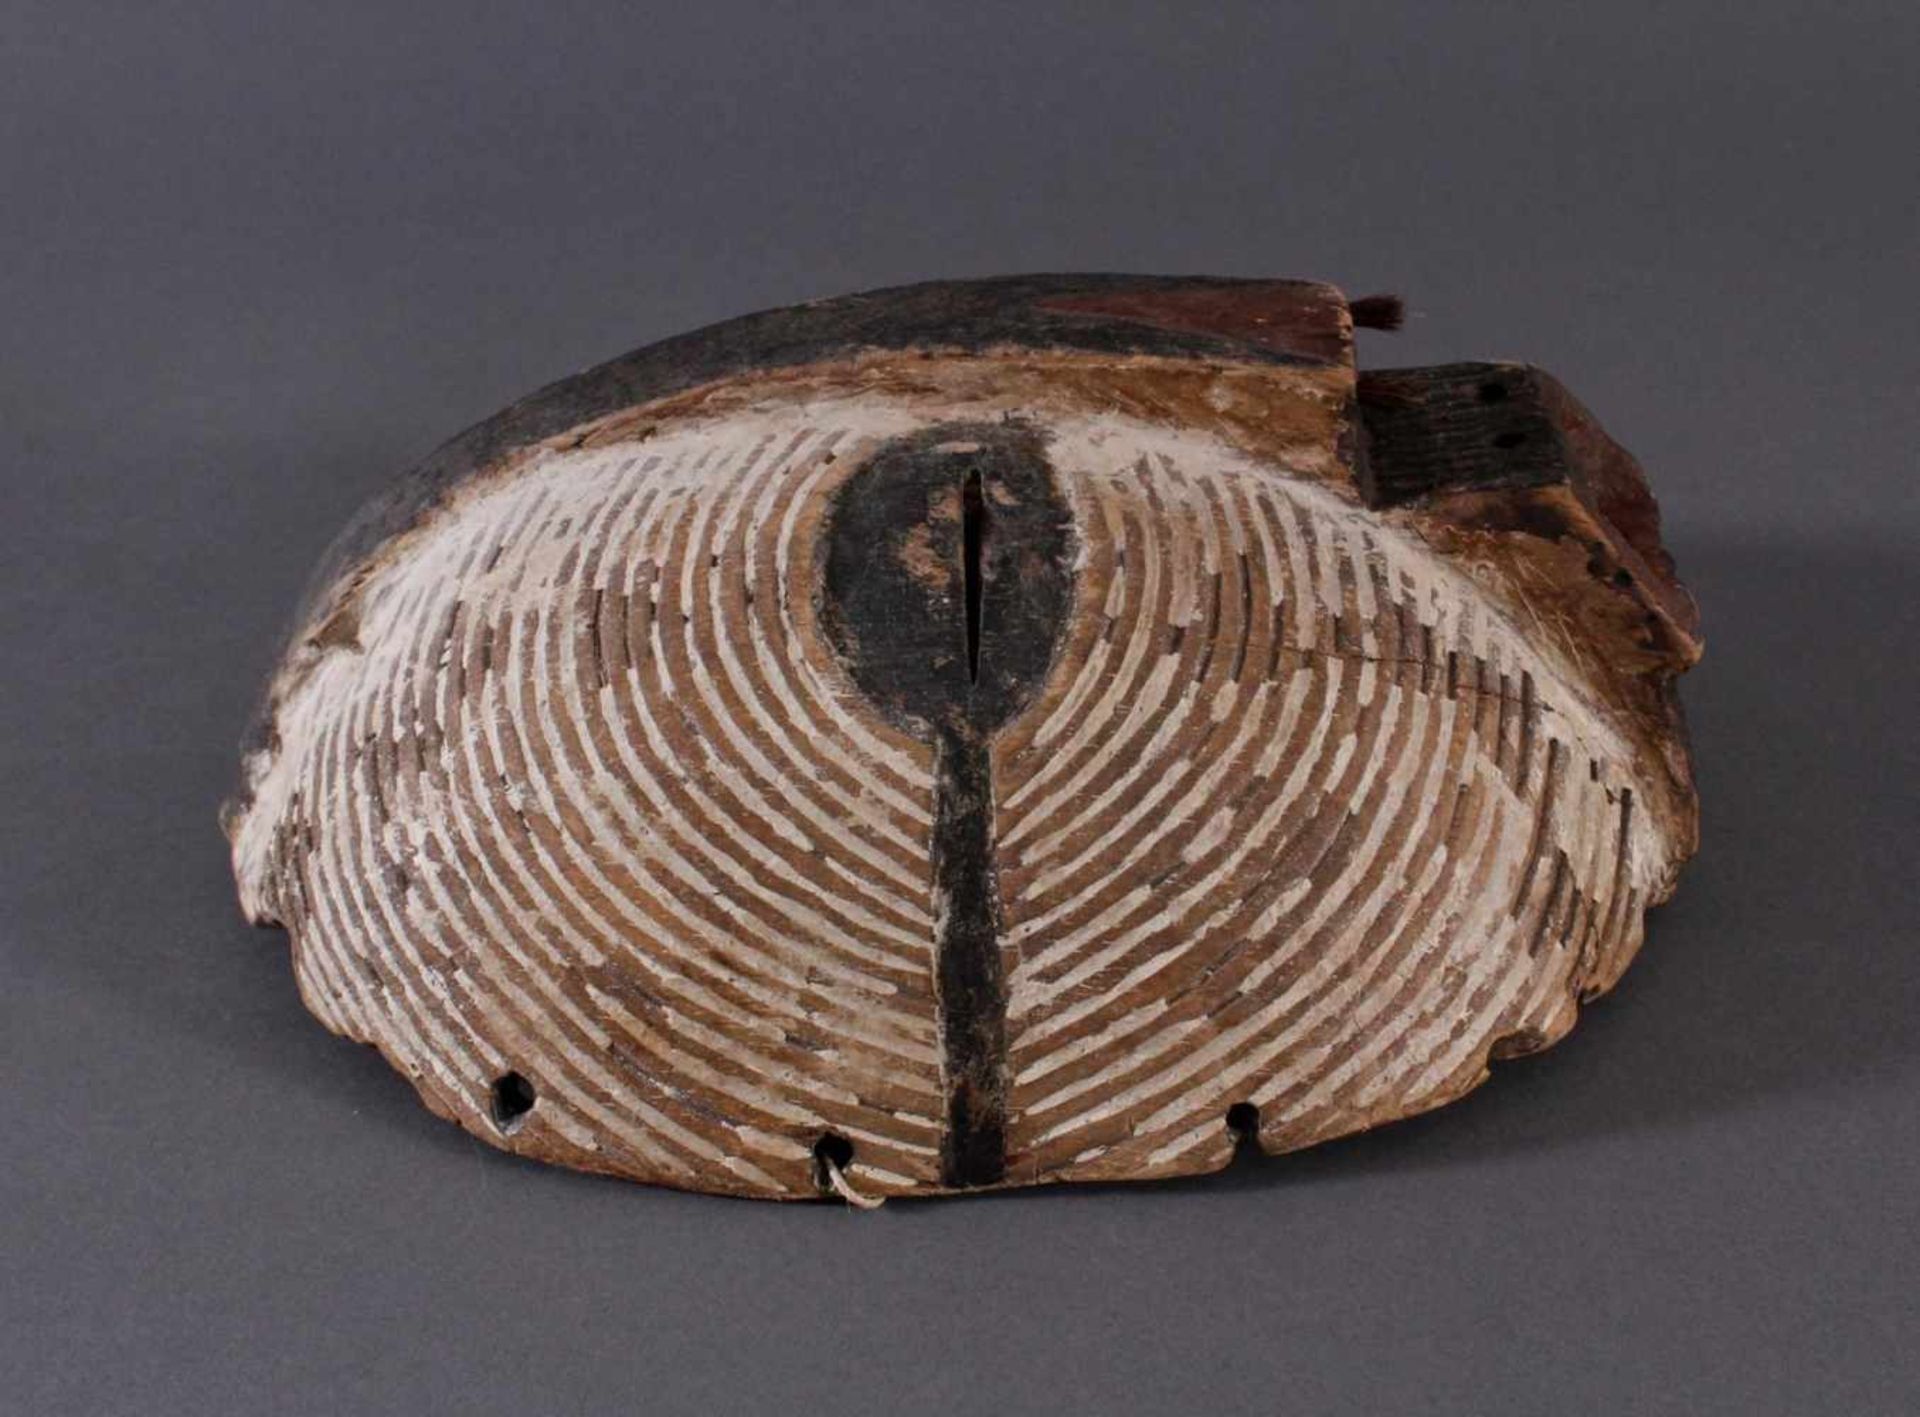 Antike Maske, Luba, KongoHolz geschnitzt, runde "Kifwebe-Maske" der Luba. polychrom gefärbt, mit - Bild 2 aus 6